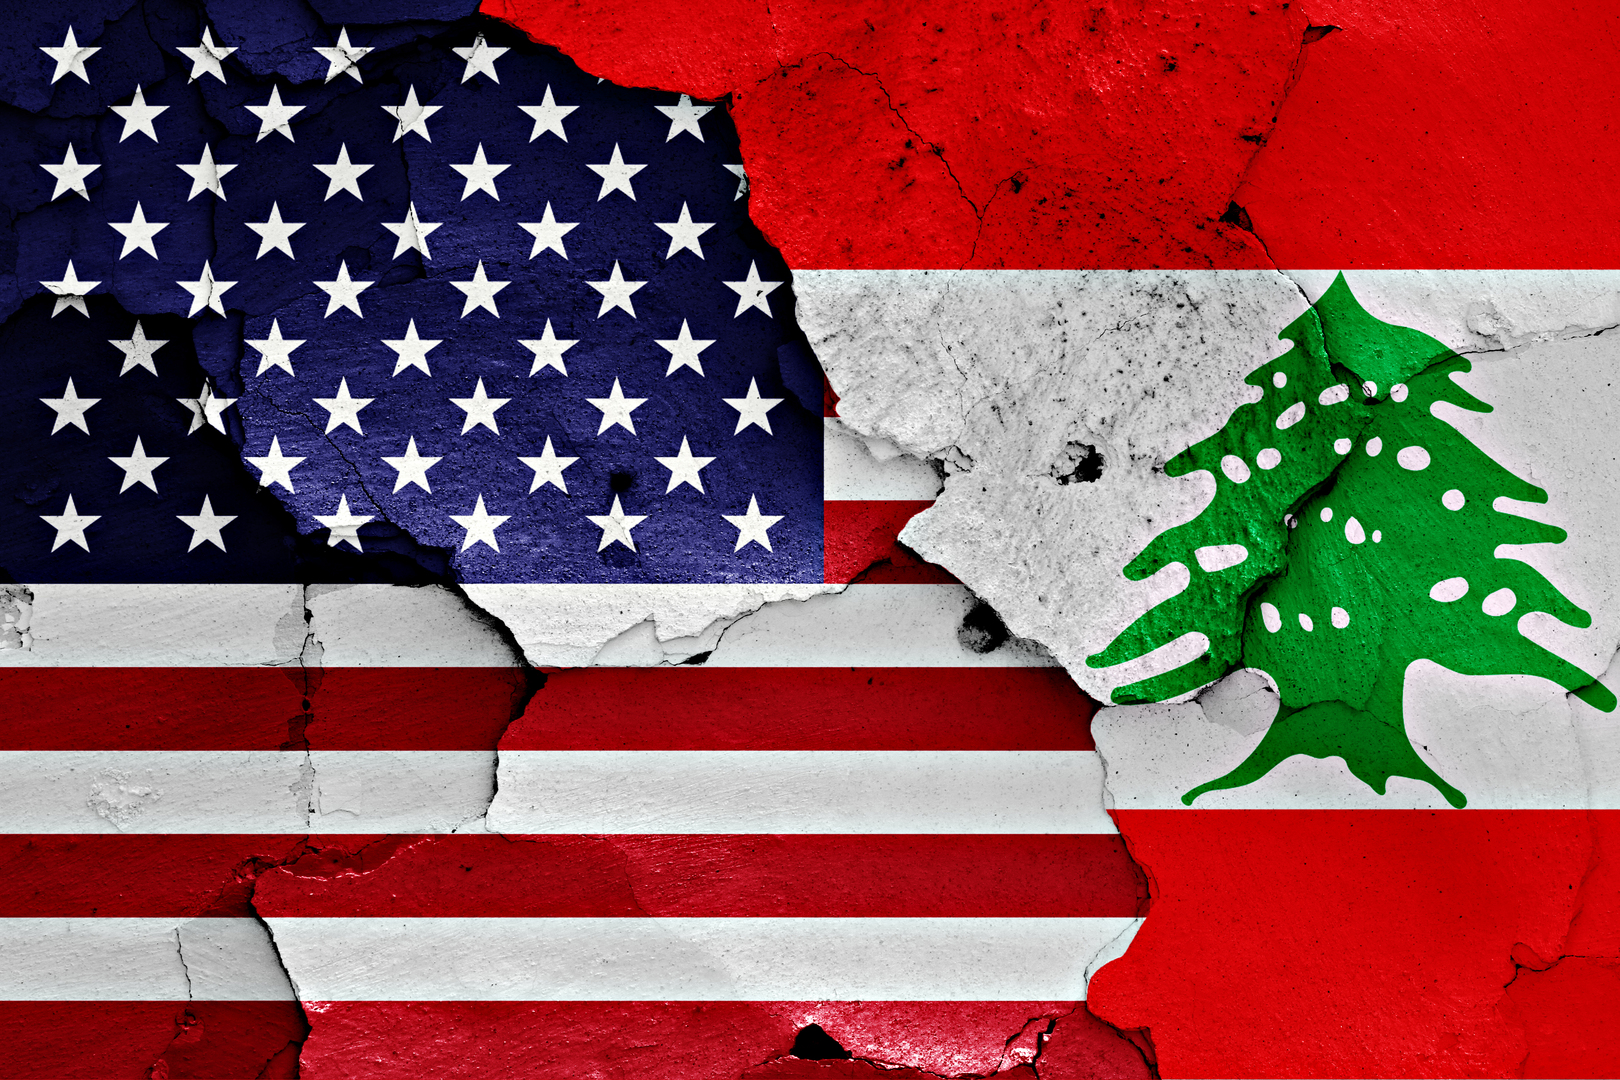 وسائل إعلام لبنانية: إطلاق نار على السفارة الأمريكية لدى بيروت